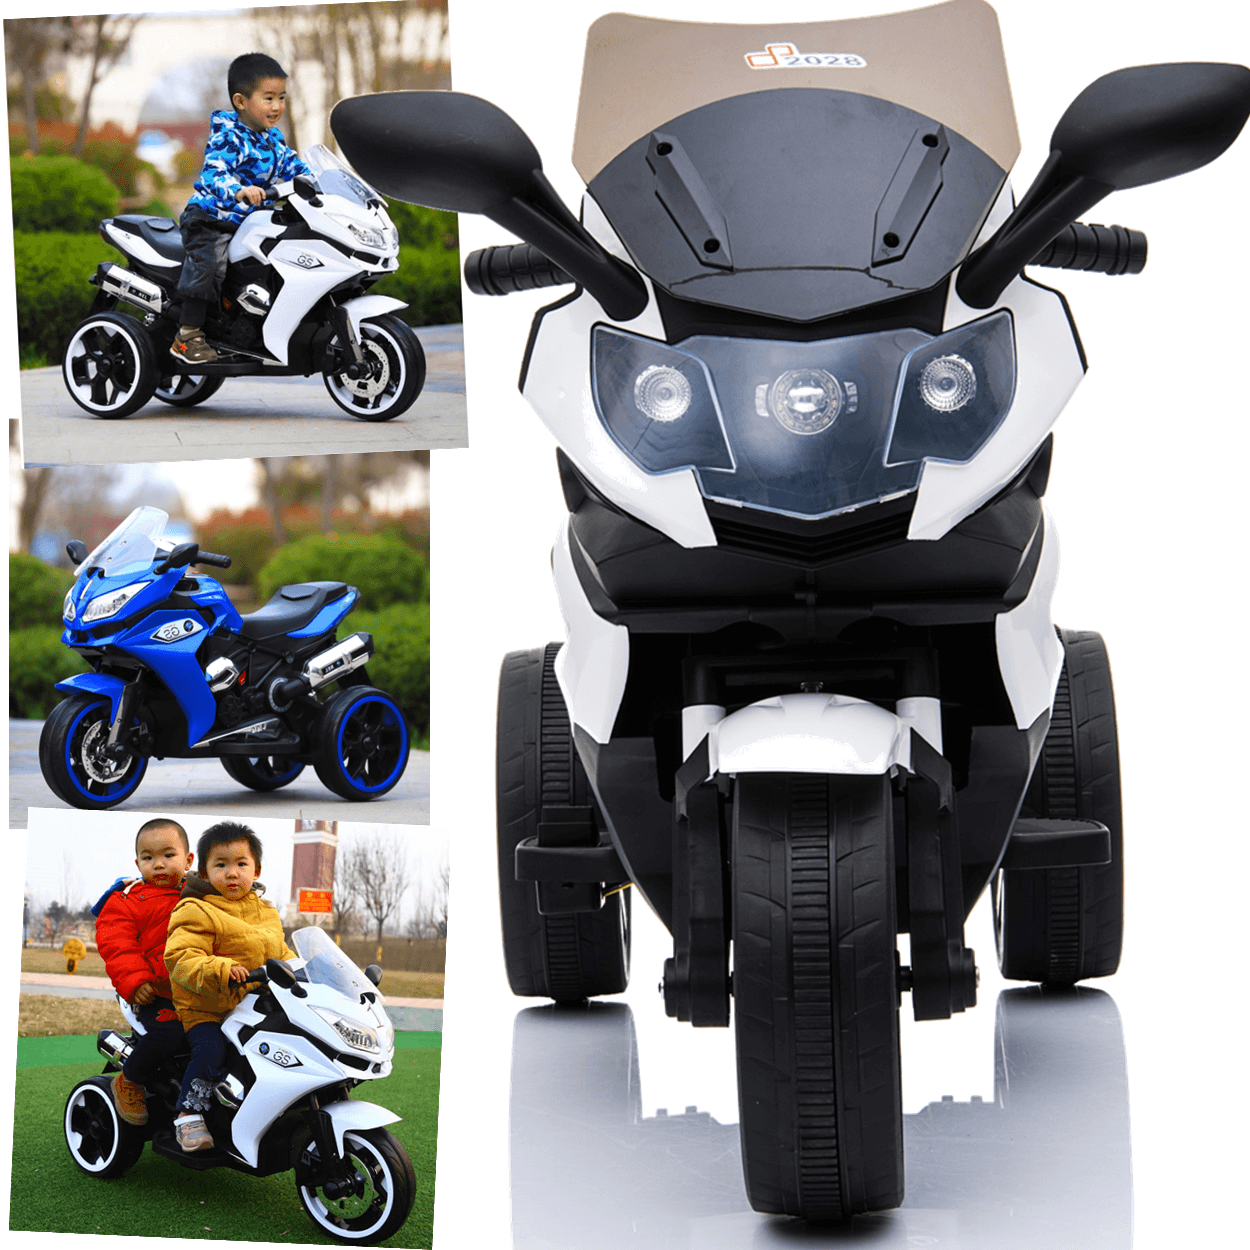 Triciclo motorizado infantil: Com o melhor preço